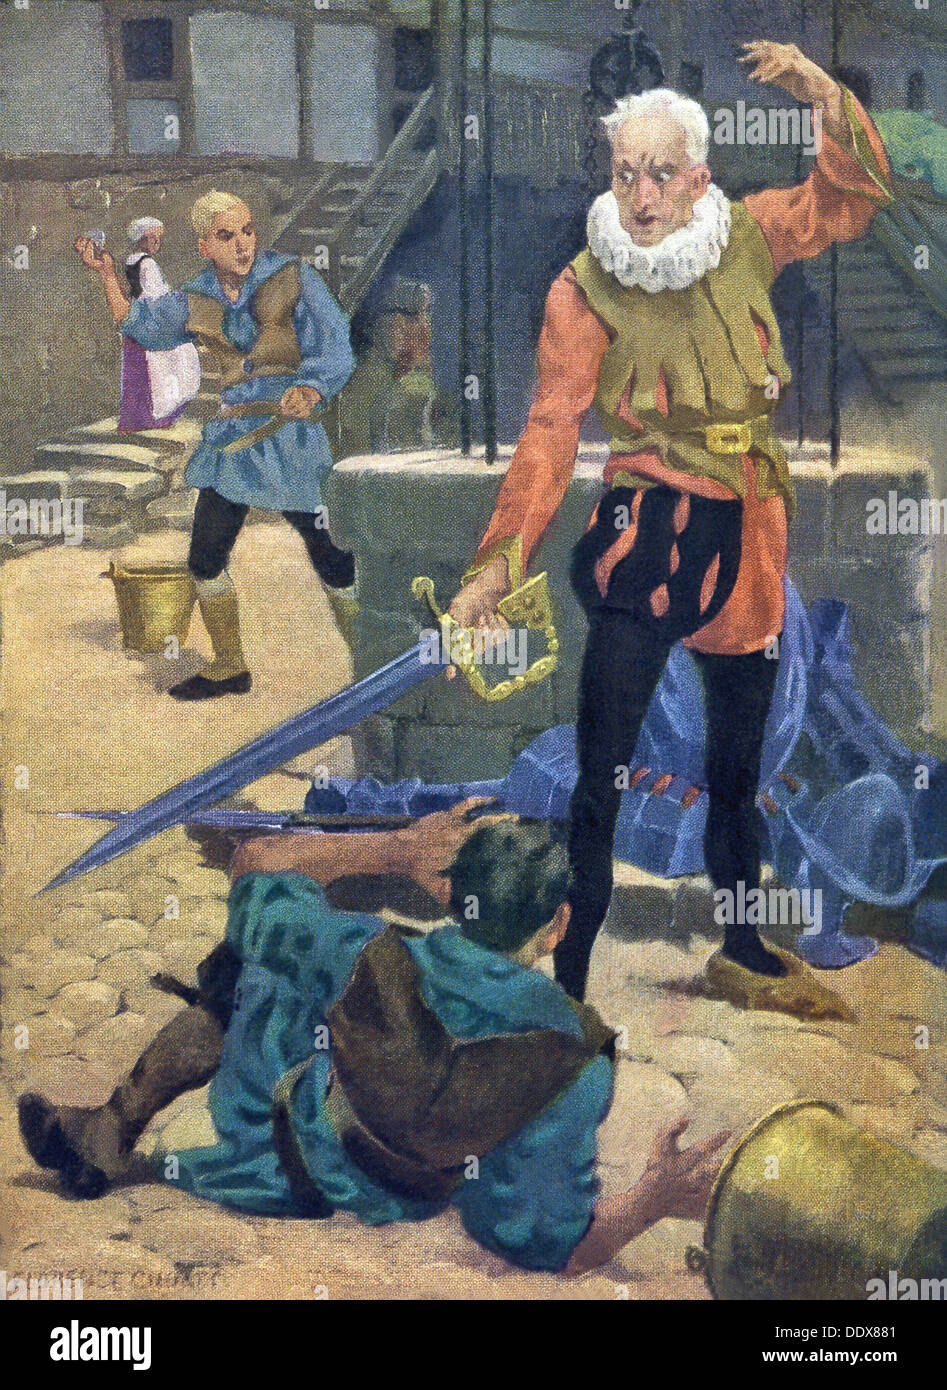 Dans cette peinture de 1920, Don Quichotte est illustré en disant que personne ne devrait tirer de l'eau du puits. Banque D'Images